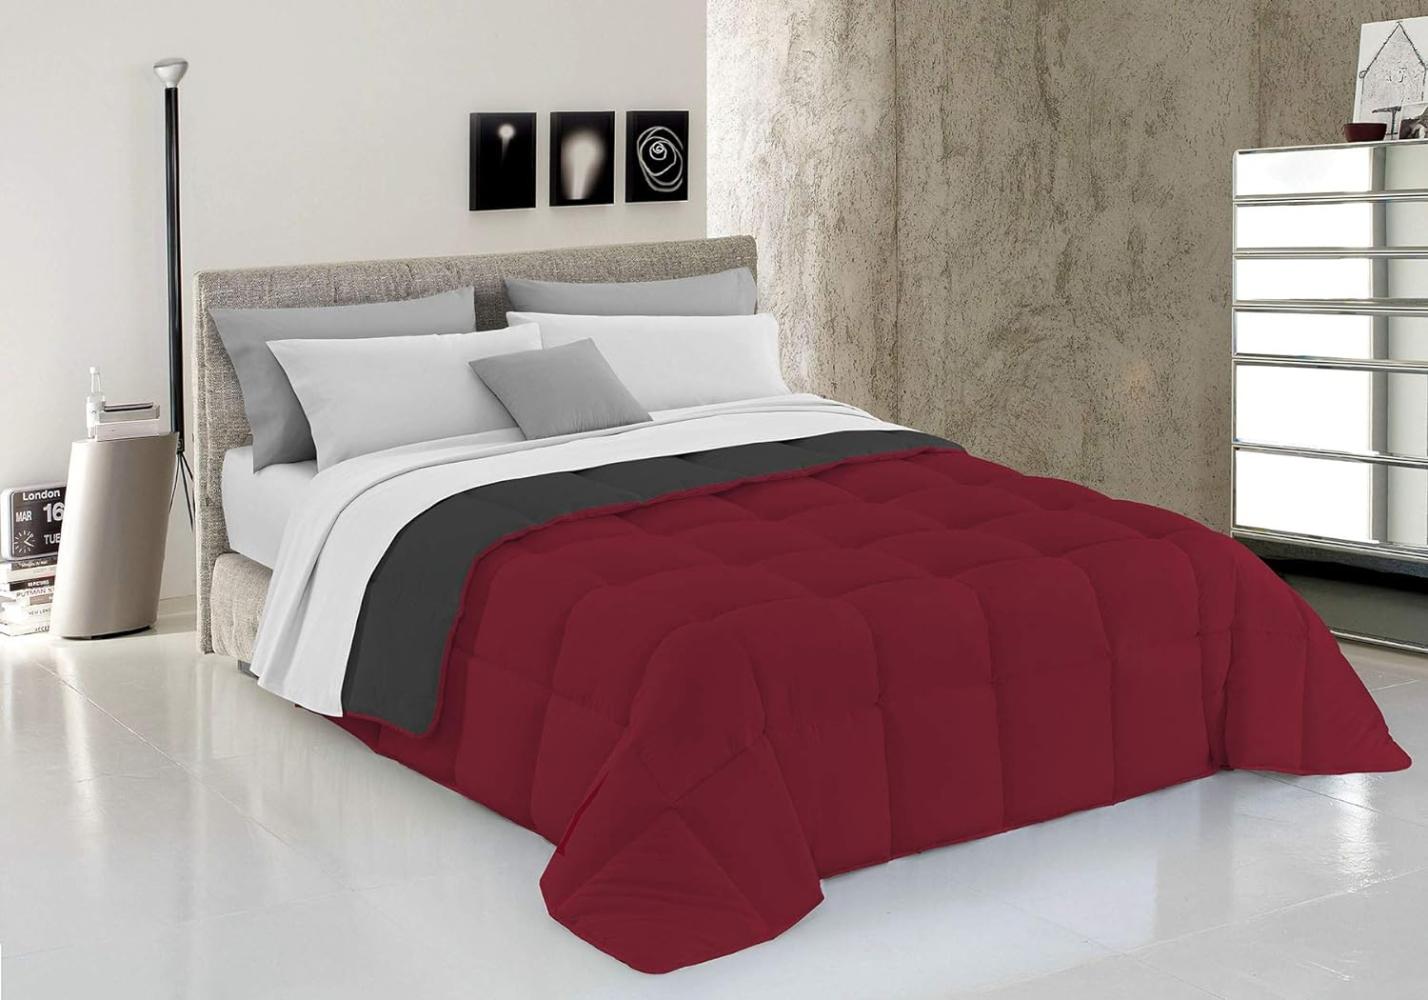 Italian Bed Linen Wintersteppdecke Elegant, Bordeaux/Dunkelgrau, Doppelte, 100% Mikrofaser, 260x260cm Bild 1